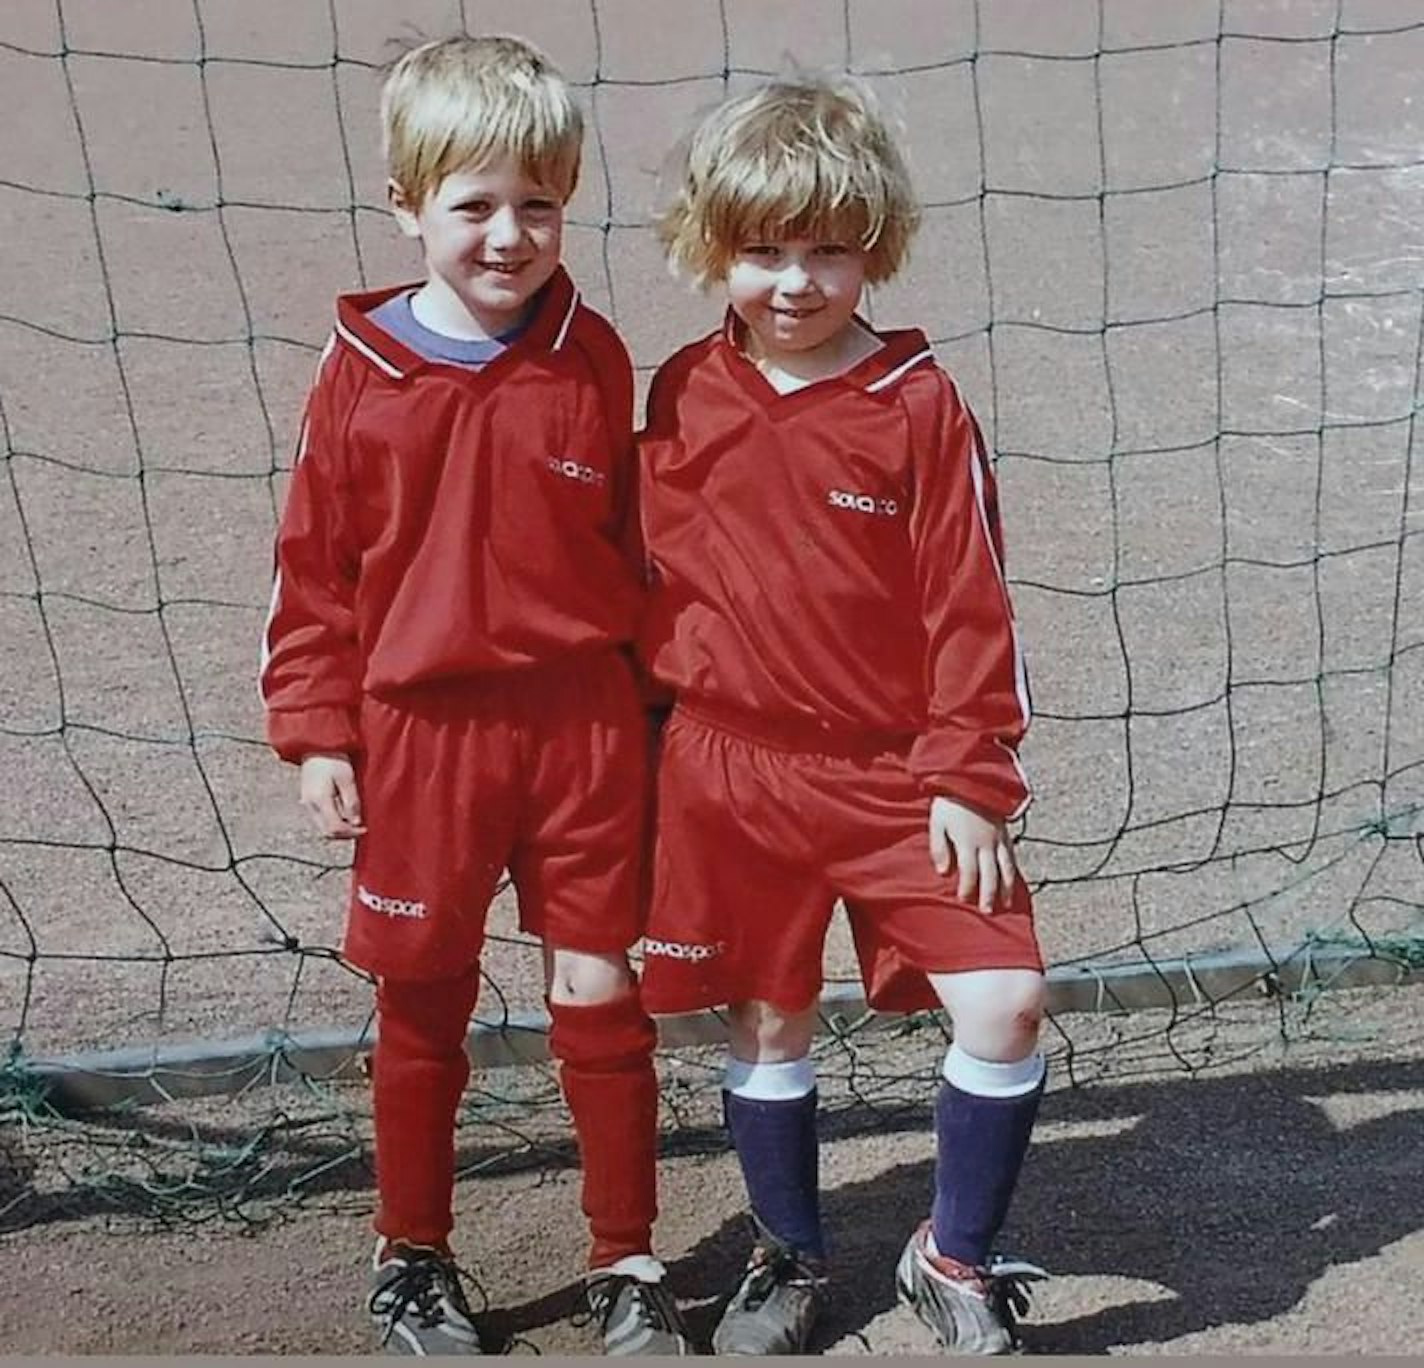 Nicolas Hoffmann und seine Cousine Maike Buchmüller standen schon im Jahr 2007 beim FC Sankt Augustin zusammen auf dem Platz.